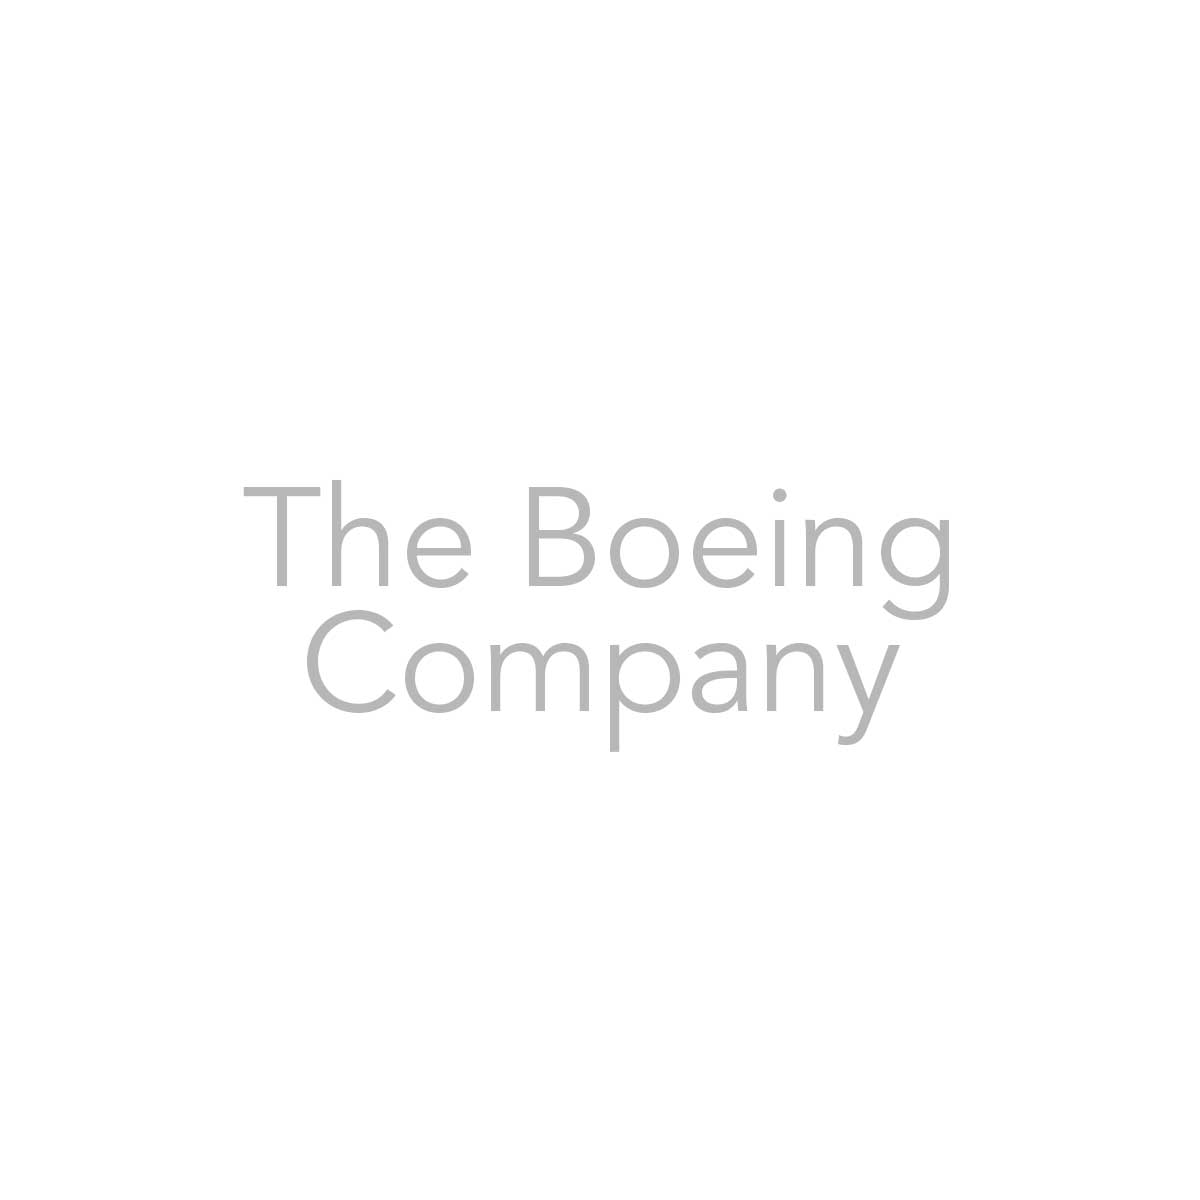 Het bedrijfslogo van Boeing op de pagina Partners